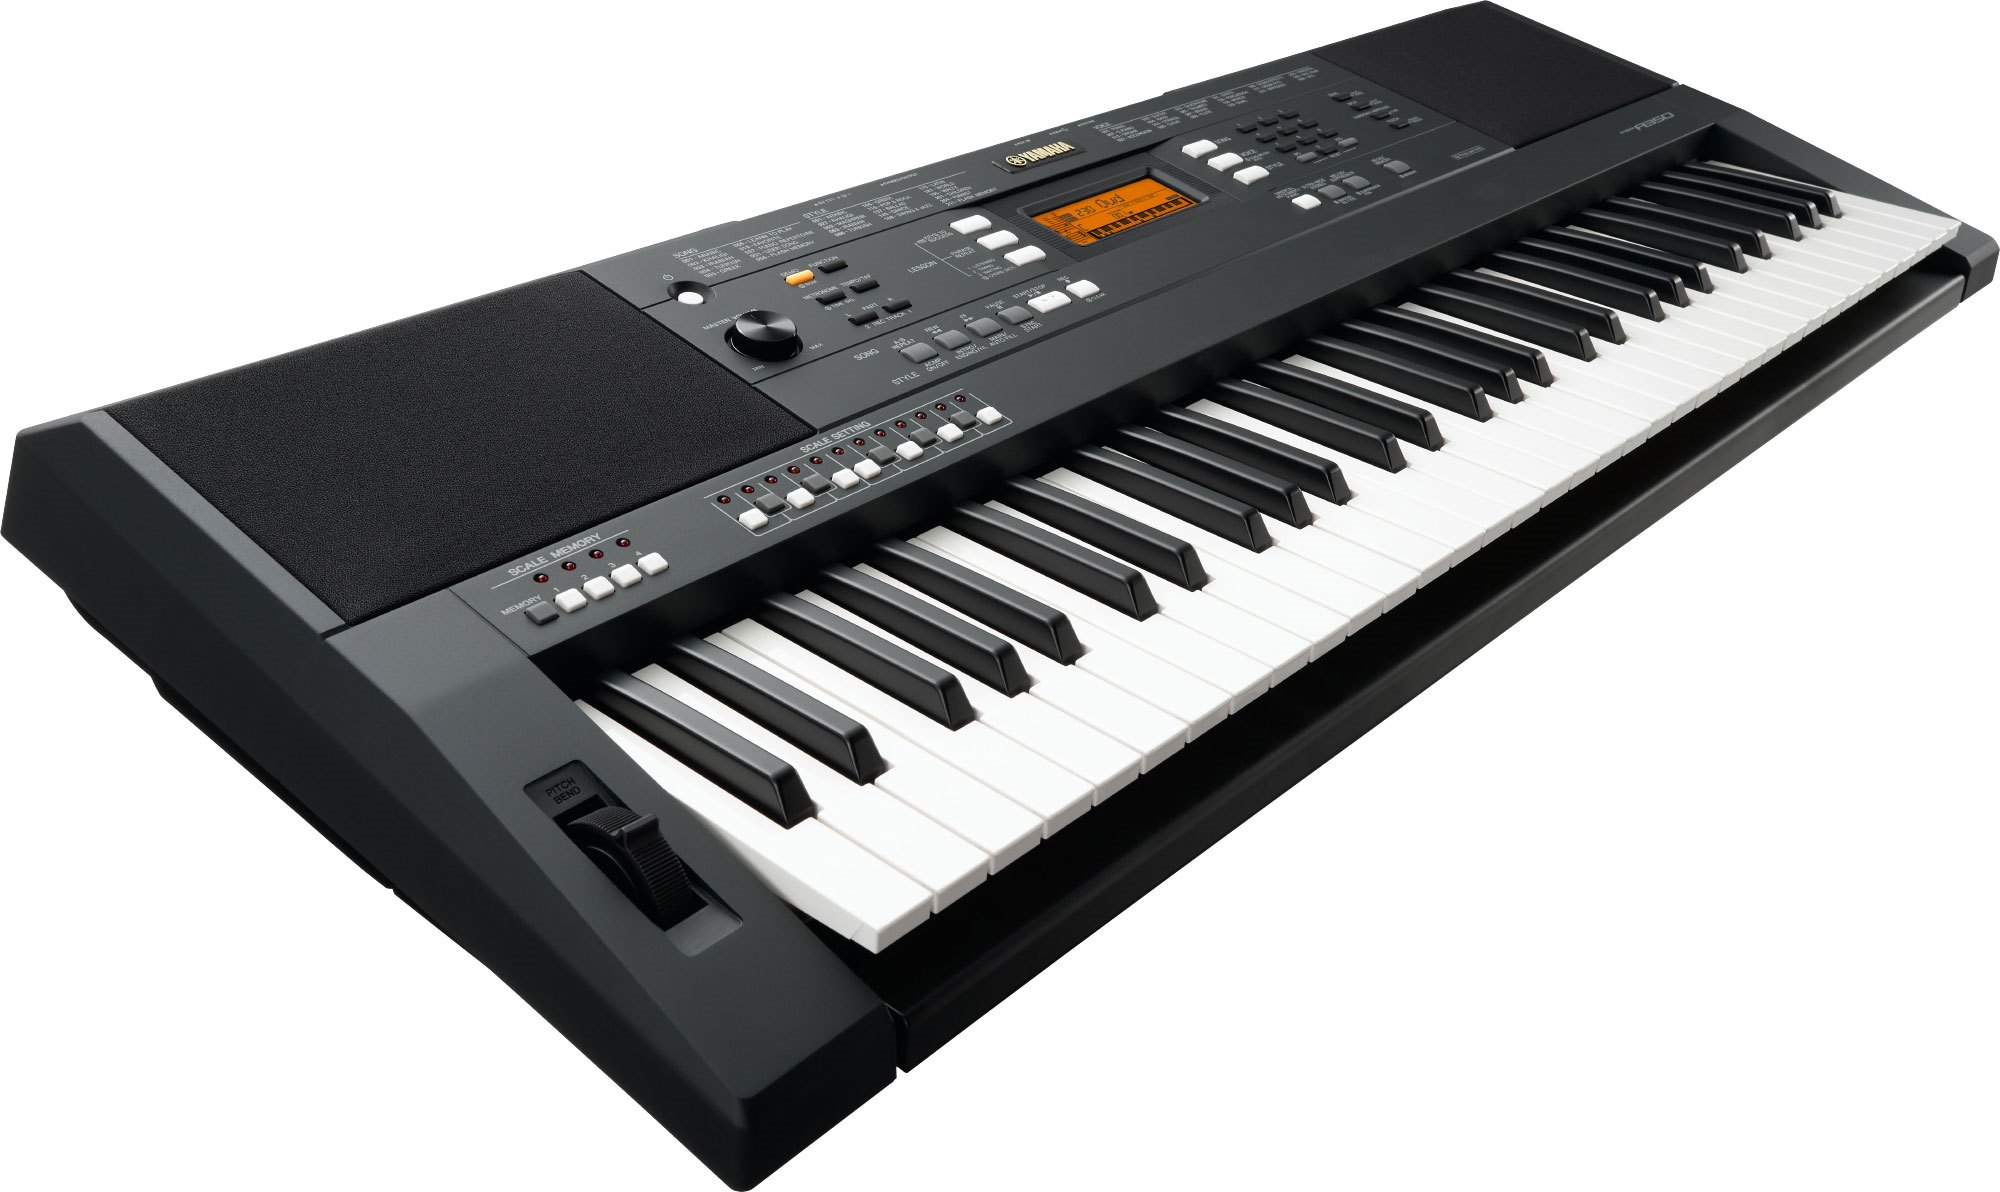 Yamaha PSR-A350 Oriental Digital Keyboard